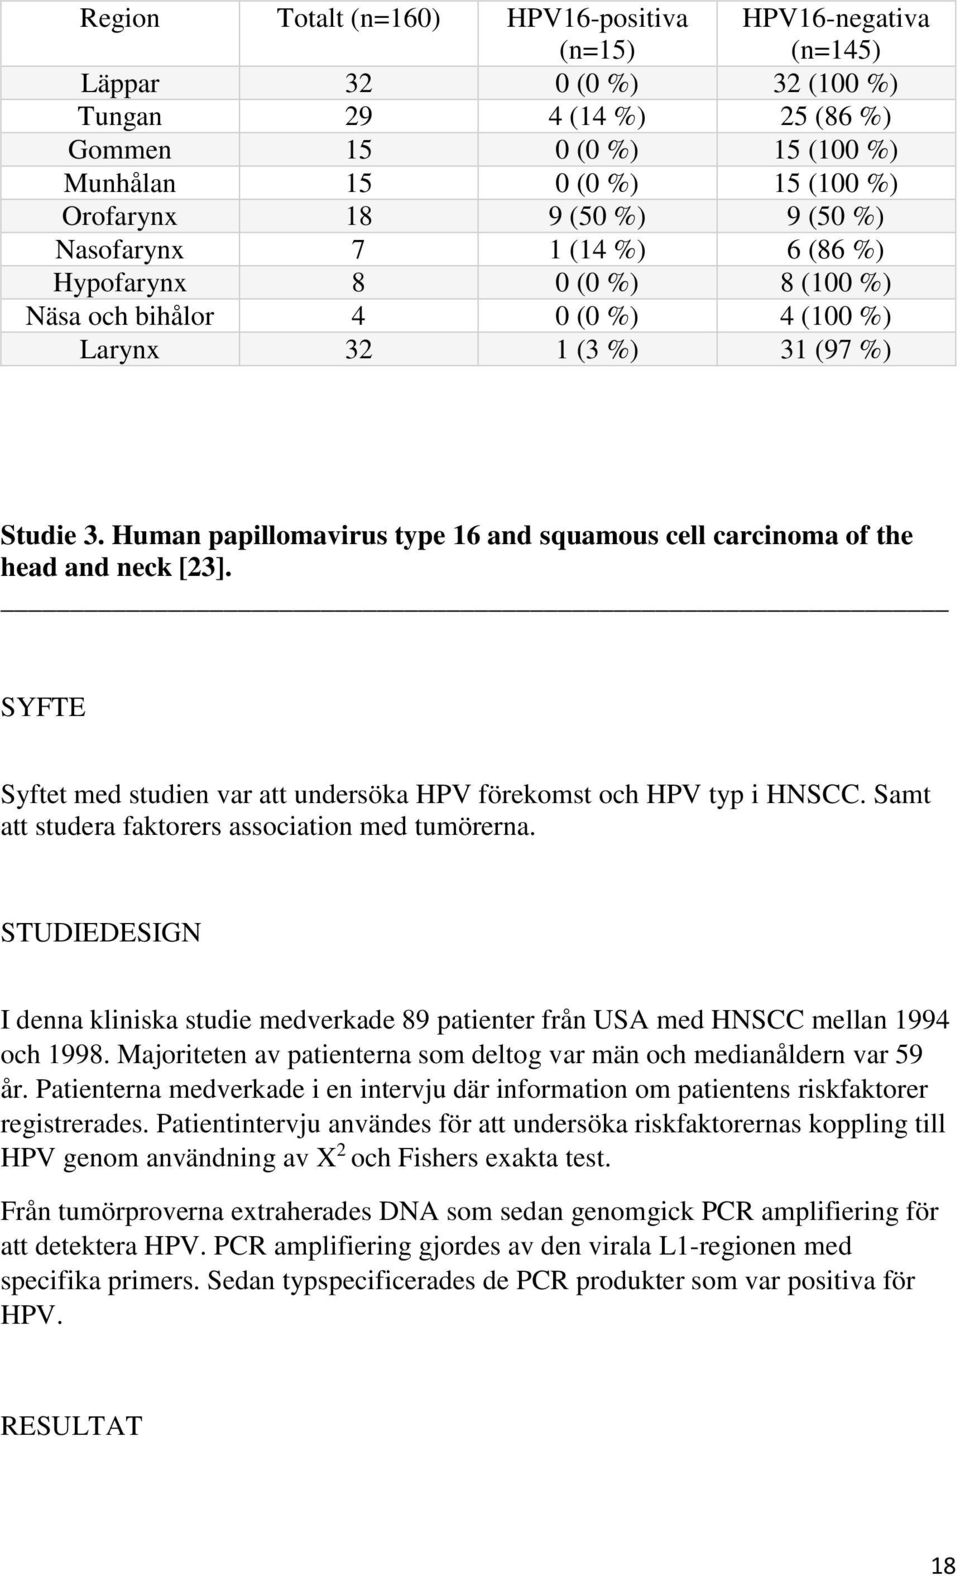 Human papillomavirus type 16 and squamous cell carcinoma of the head and neck [23]. SYFTE Syftet med studien var att undersöka HPV förekomst och HPV typ i HNSCC.